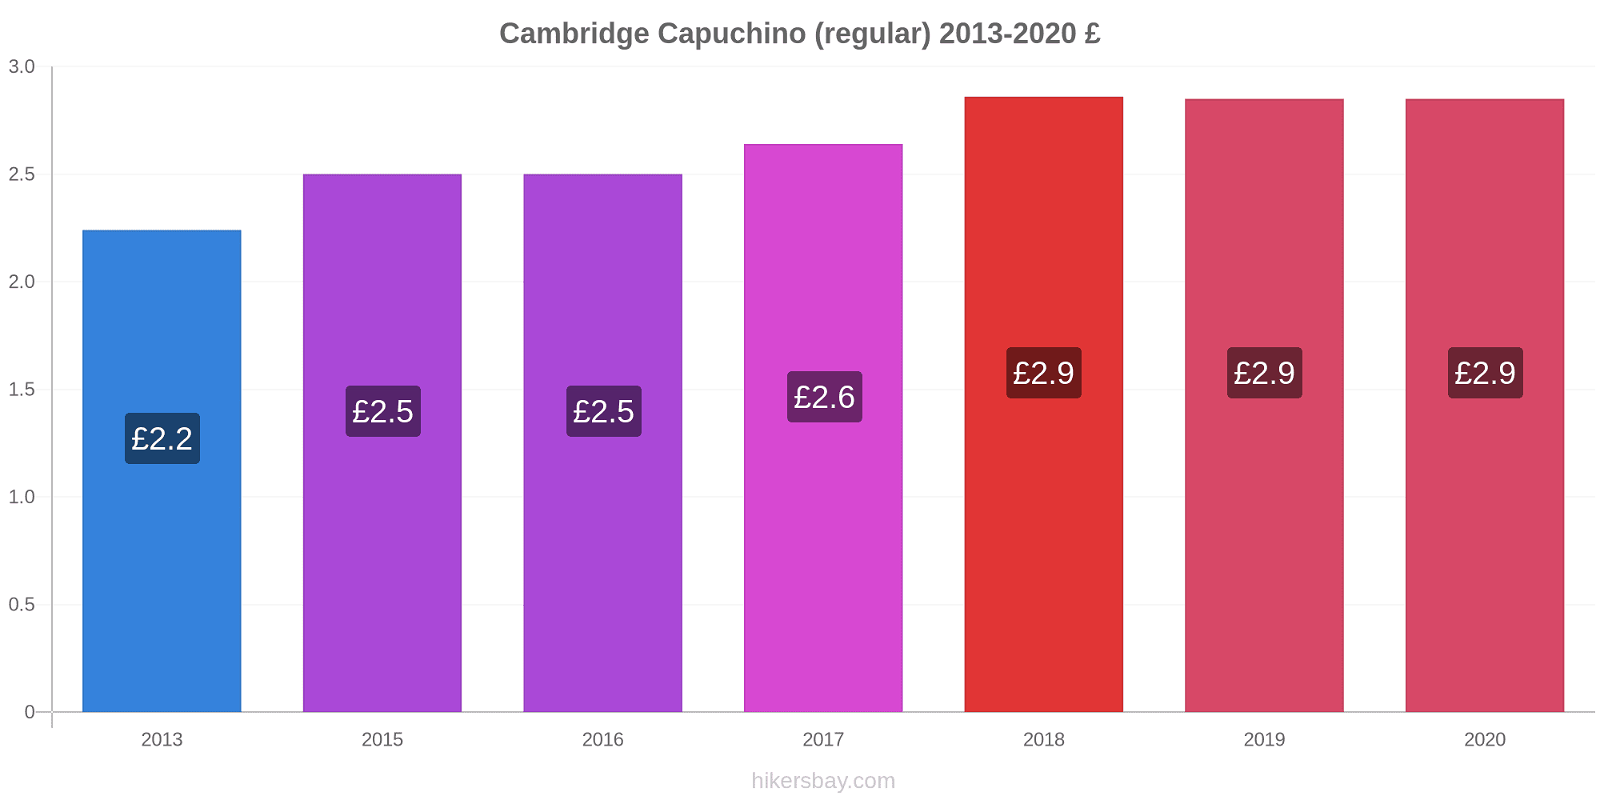 Cambridge cambios de precios Capuchino (regular) hikersbay.com